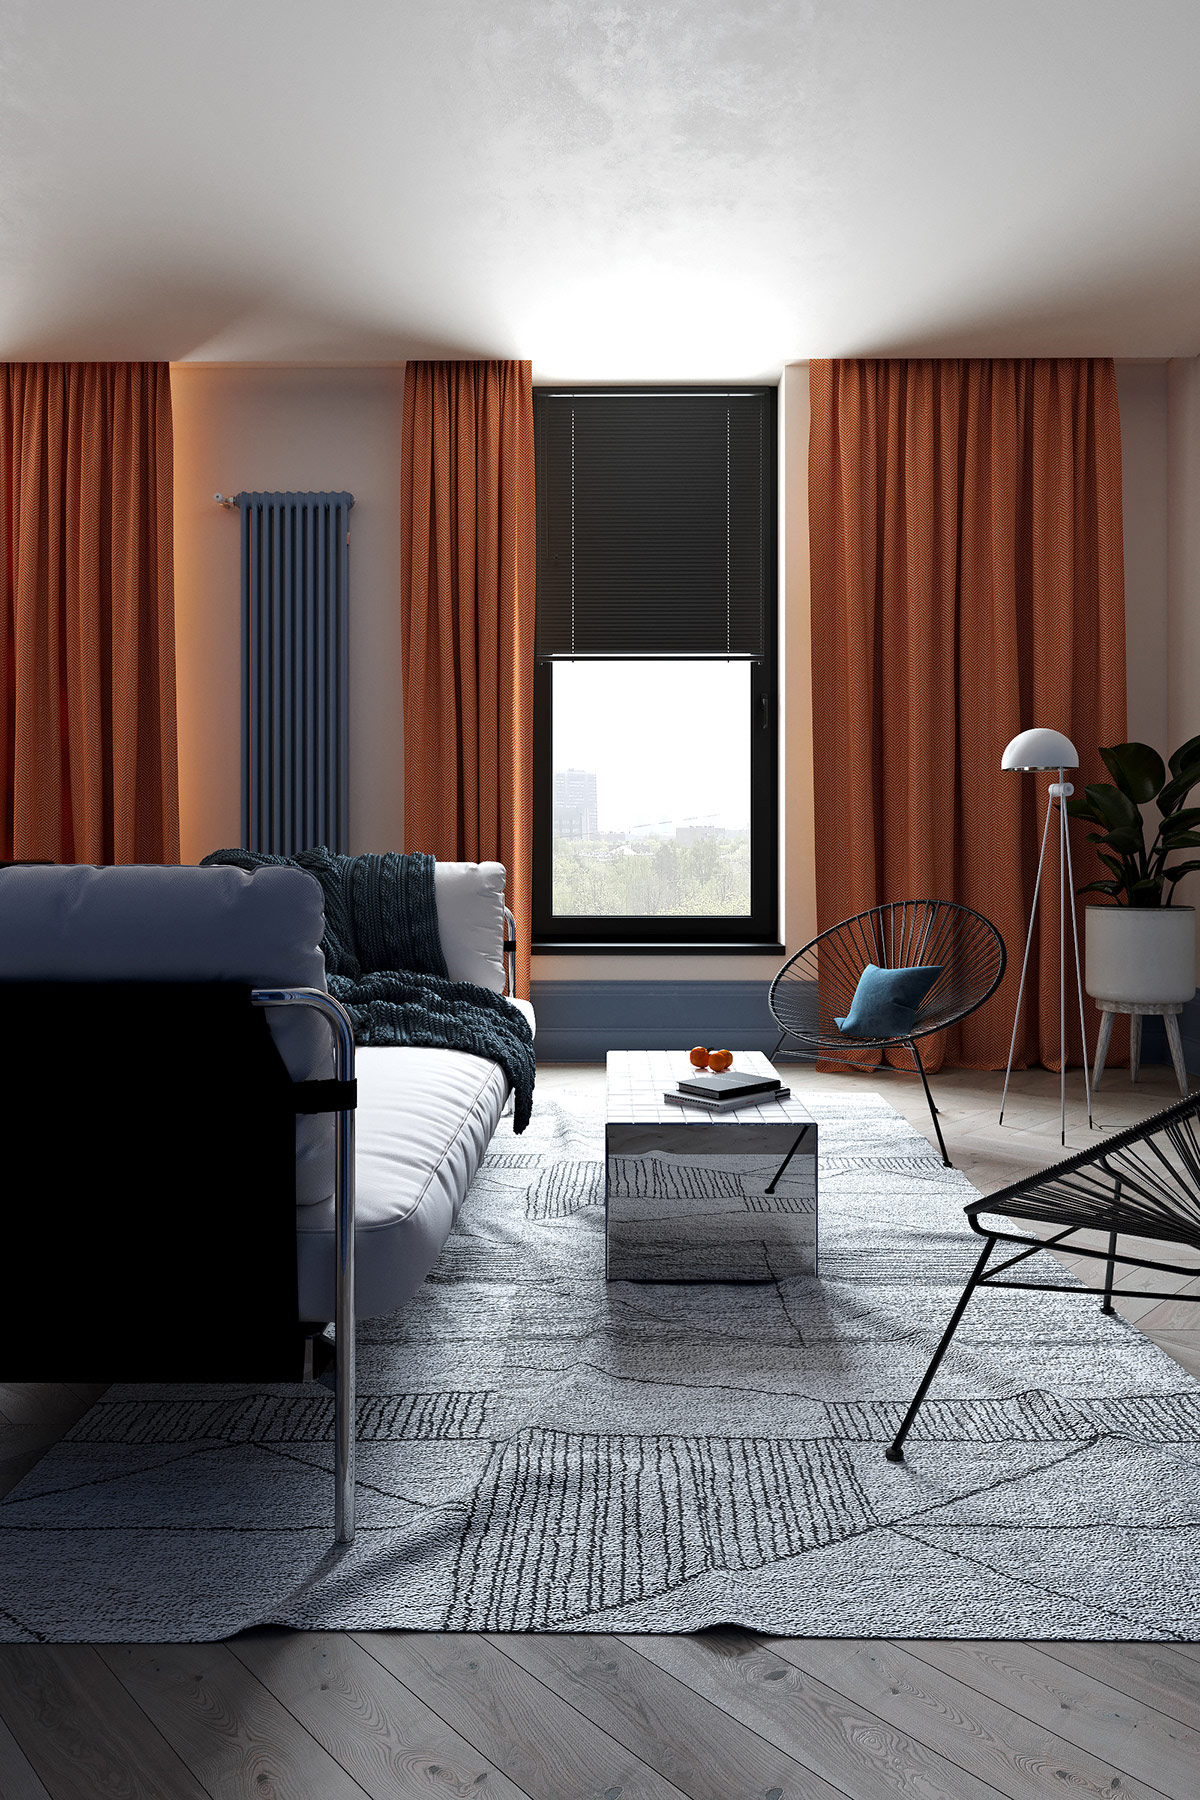 Bộ rèm cửa màu cam cao sát trần vừa tạo cảm giác căn phòng như cao thoáng hơn, vừa mang đến sự ấm áp cho không gian sống.